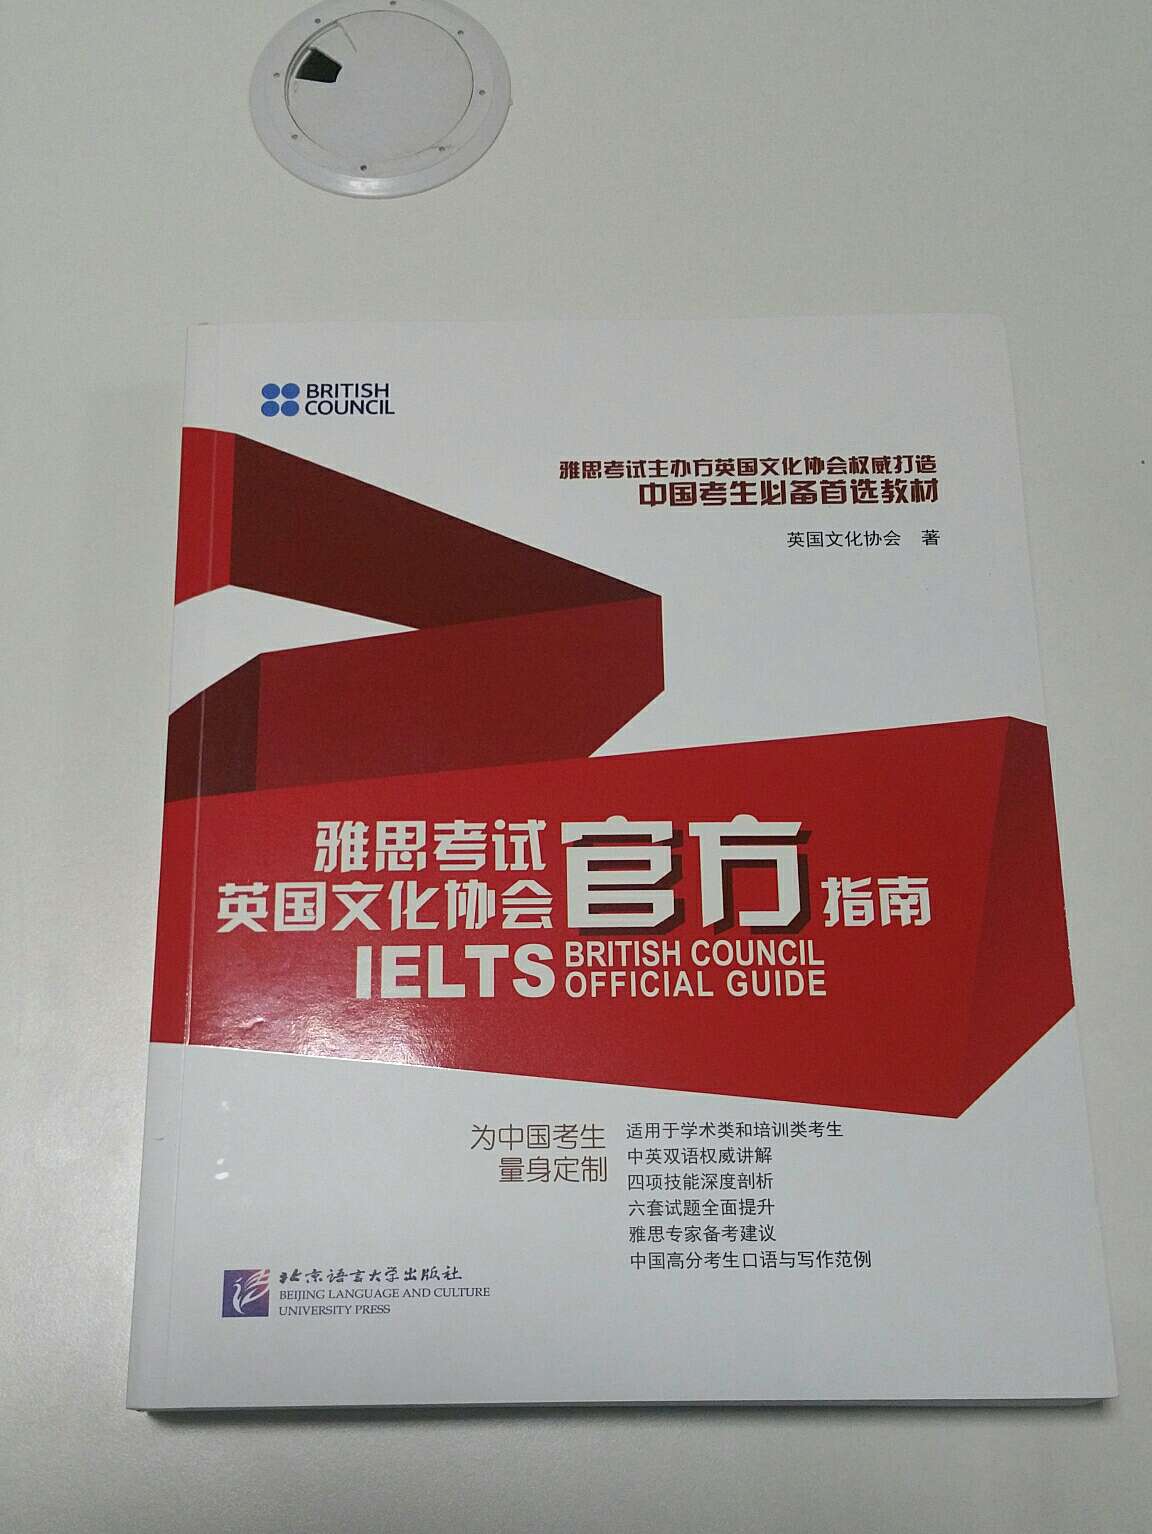 相信北京语言大学的实力。希望雅思能有个好分数。